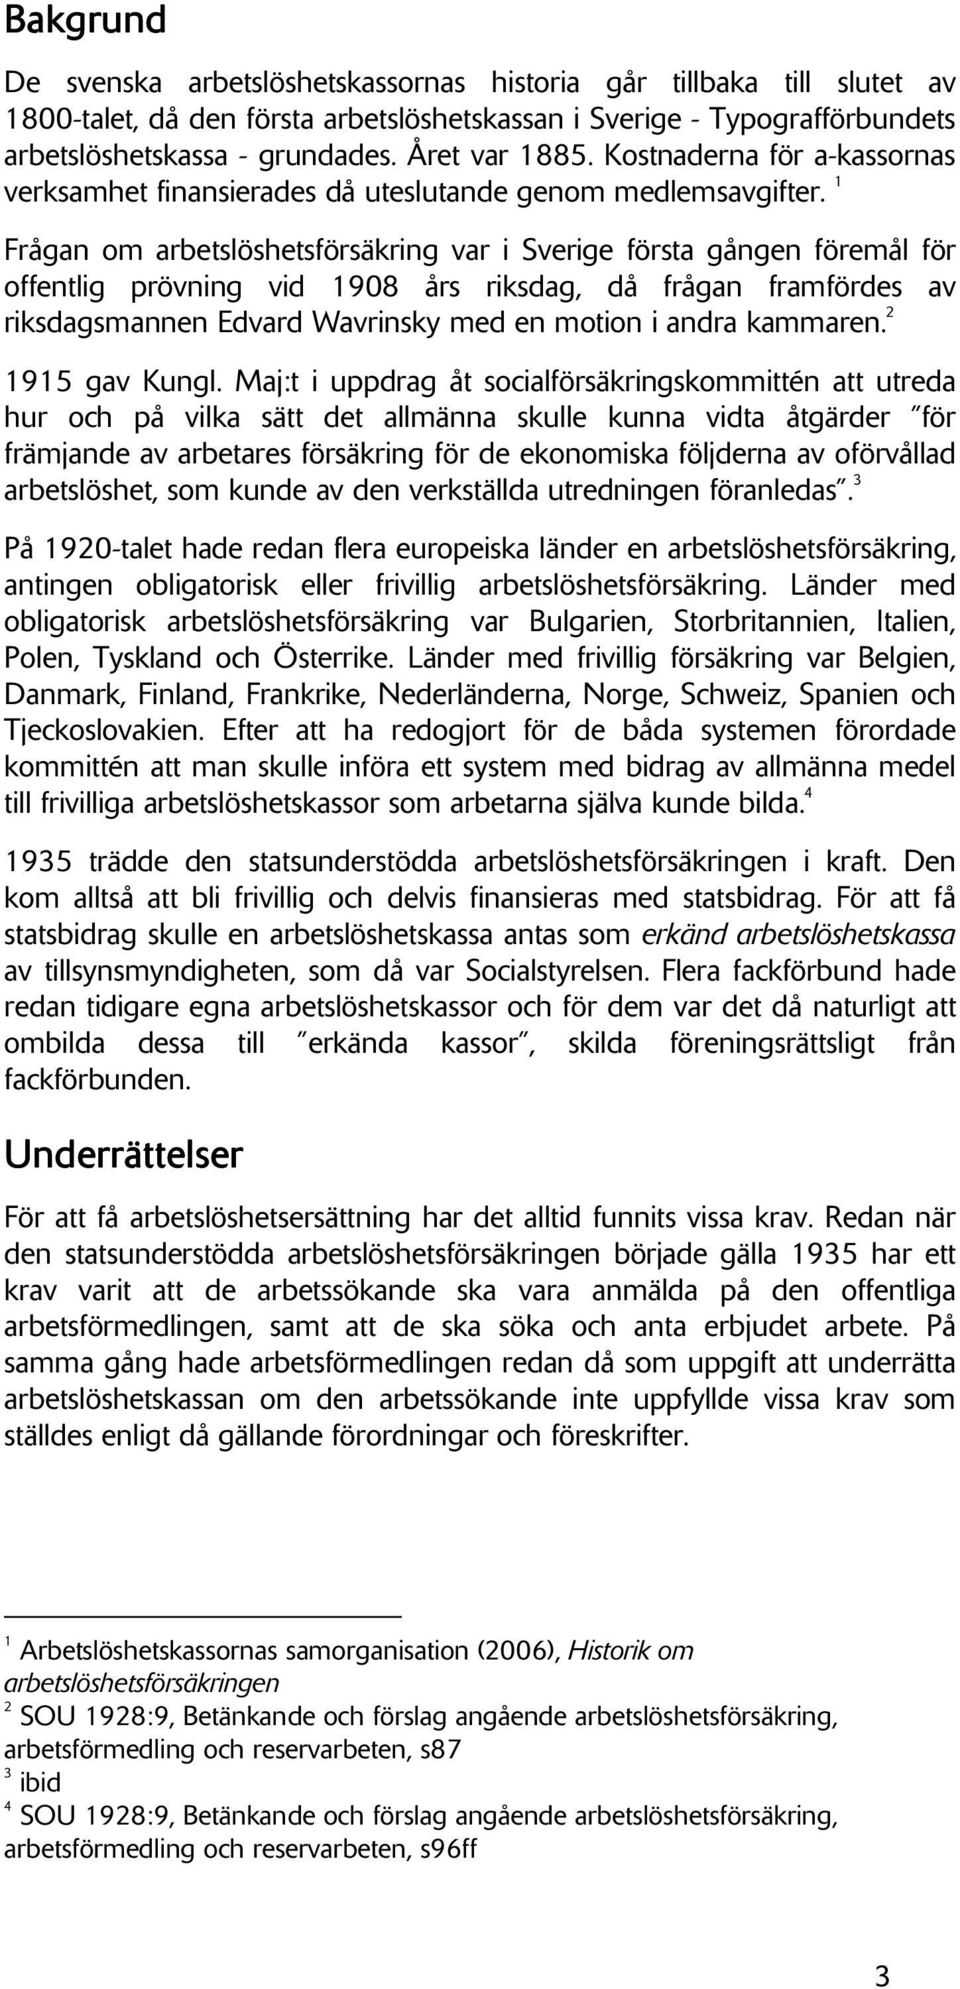 1 Frågan om arbetslöshetsförsäkring var i Sverige första gången föremål för offentlig prövning vid 1908 års riksdag, då frågan framfördes av riksdagsmannen Edvard Wavrinsky med en motion i andra